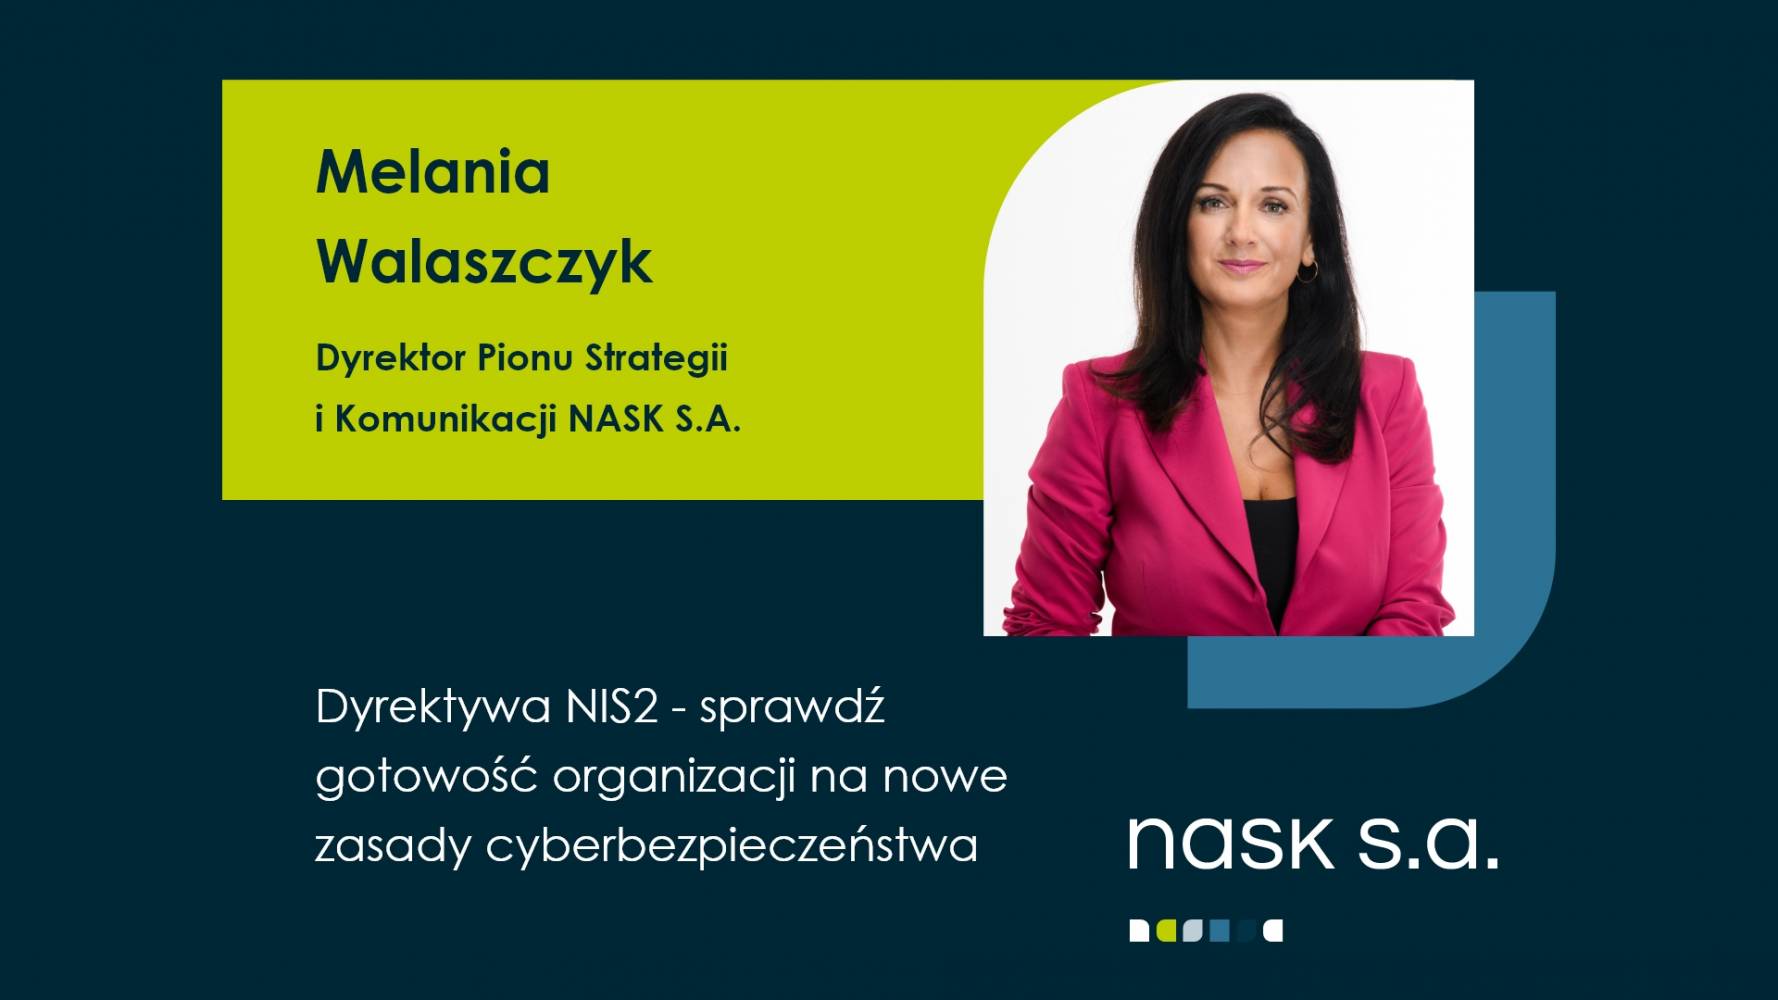 Melania Walaszczyk, NASK S.A. Cyberbezpieczeństwo